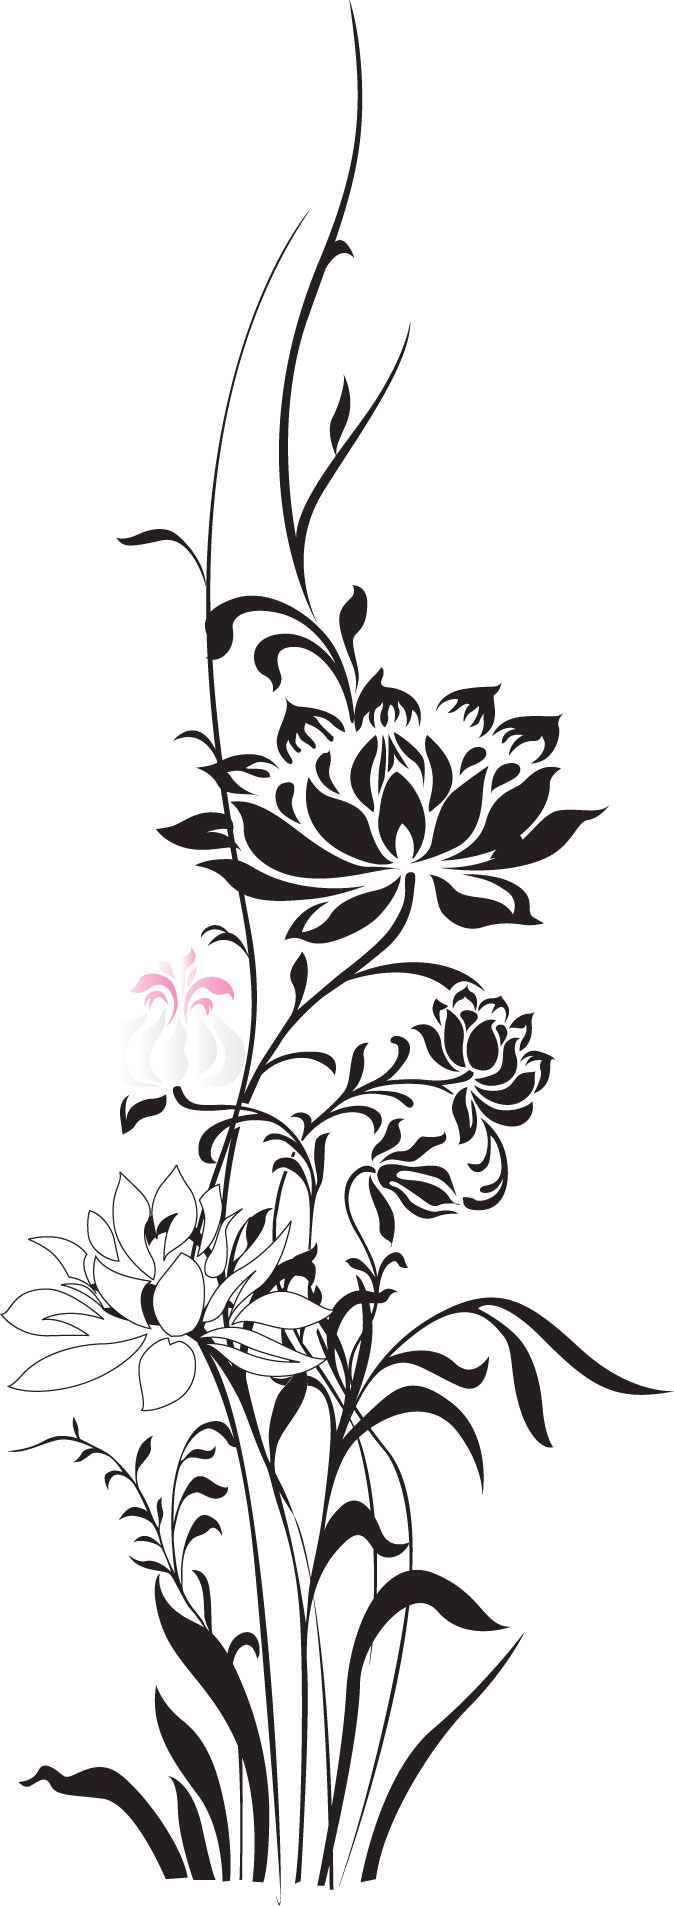 花のイラスト フリー素材 白黒 モノクロno 280 黒 ピンク 枝葉